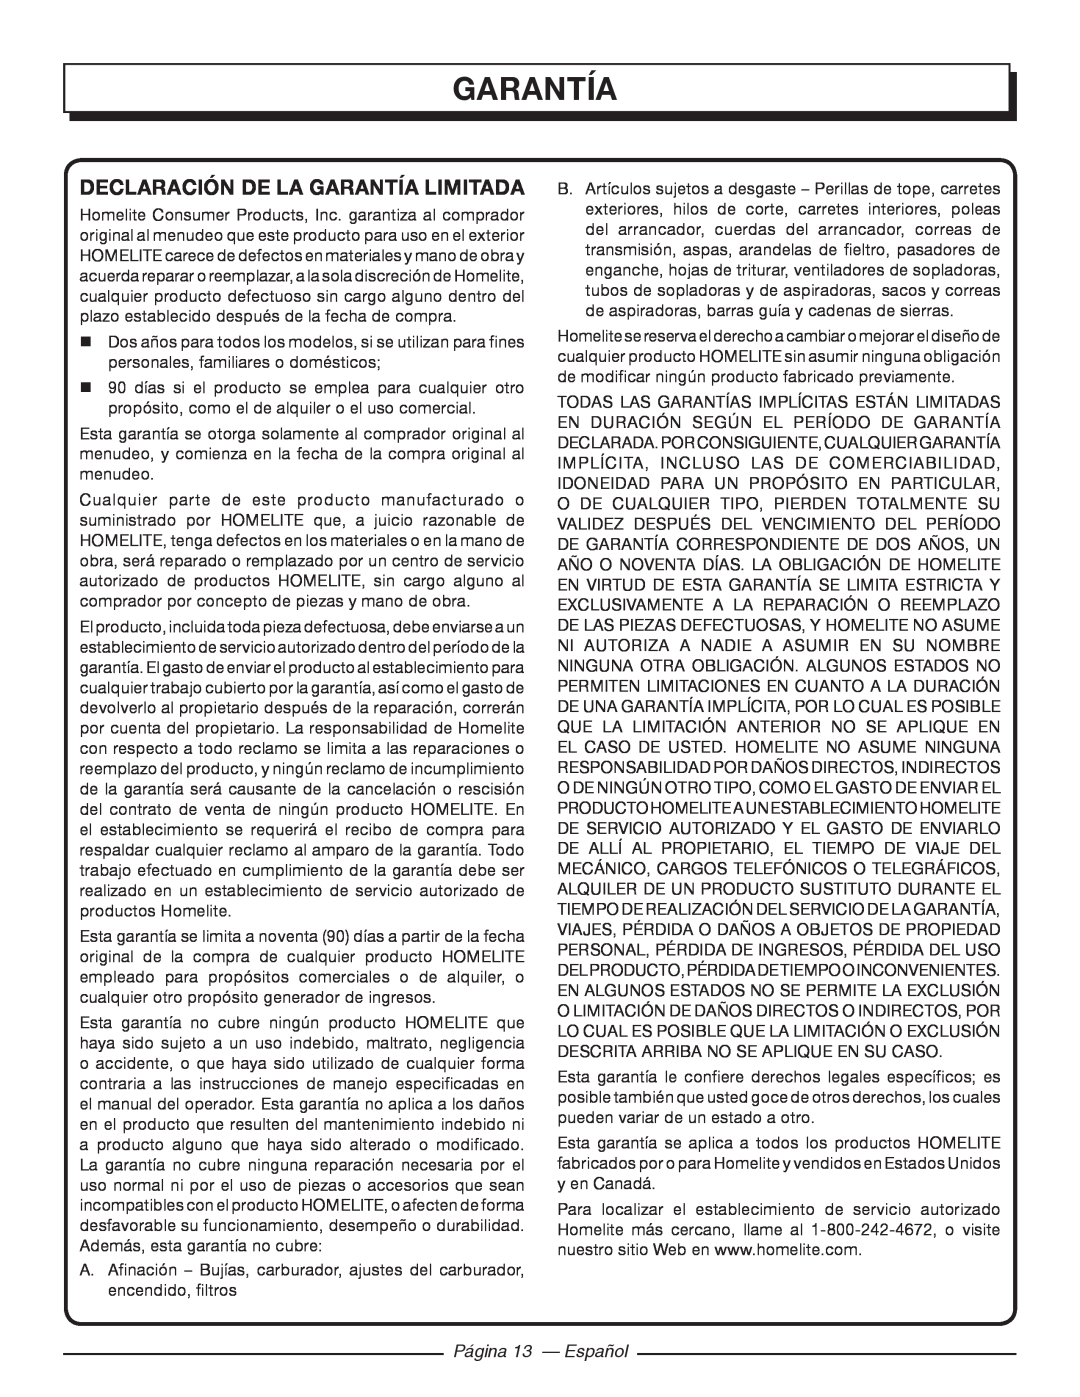 Homelite UT41120 manuel dutilisation garantía, Declaración De La Garantía Limitada, Página 13 - Español 